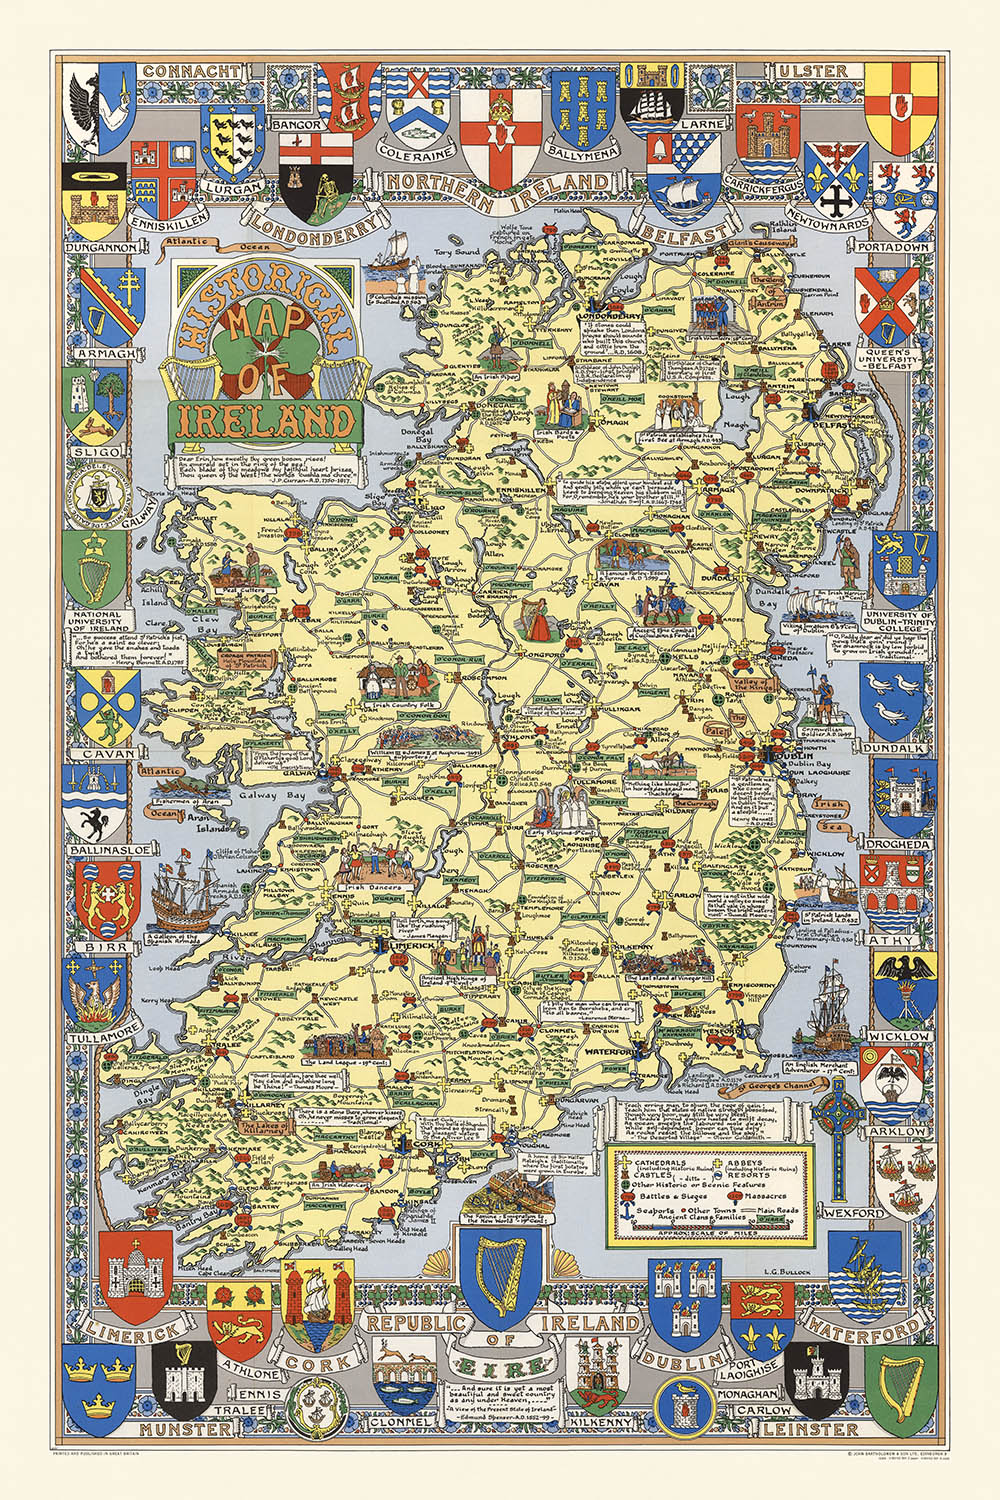 Ancienne carte picturale de l'Irlande par Bullock, 1955 : Dublin, Belfast, Invasion viking, Invasion française, Clans